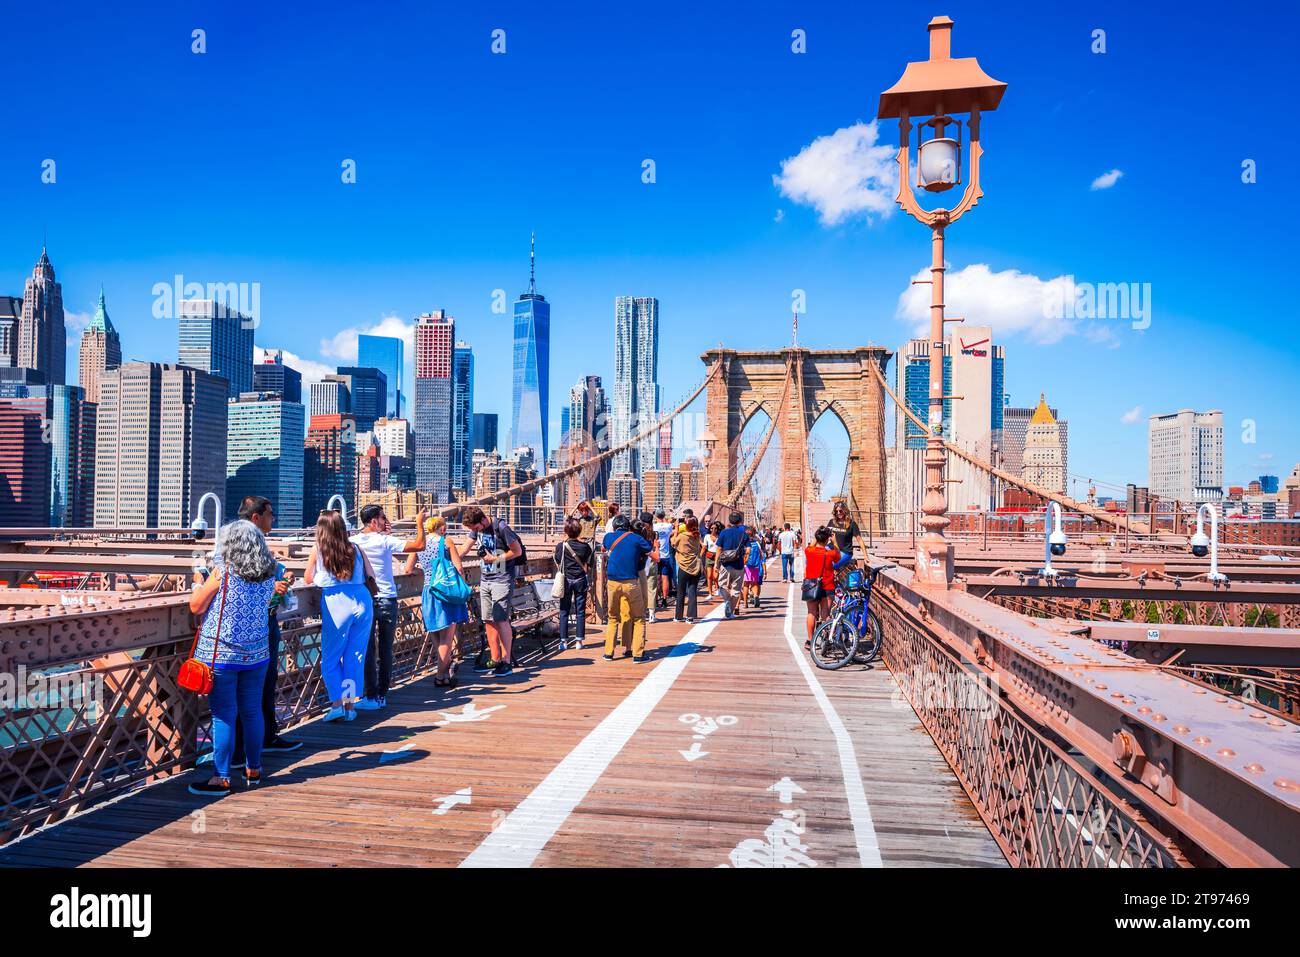 New York, États-Unis - 15 septembre 2019. Brooklyn Bridge et Manhattan avec One World Tower, célèbres paysages de New York. Banque D'Images